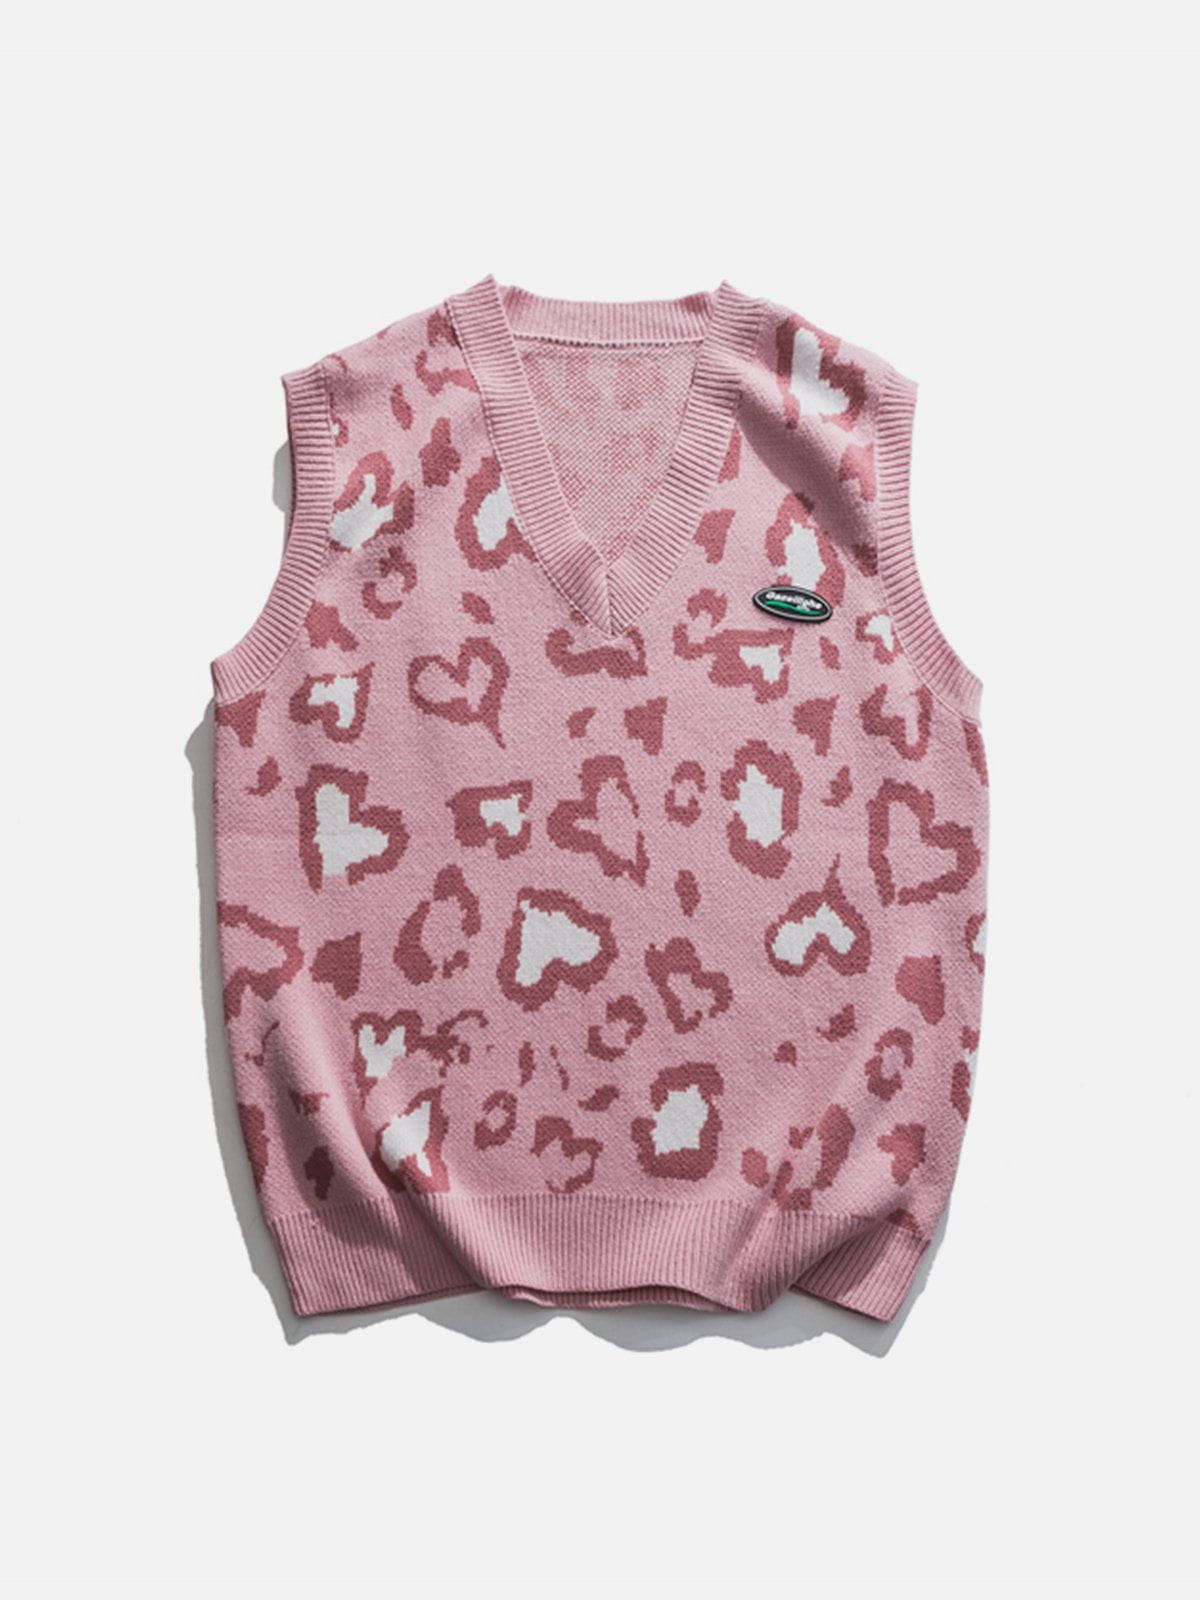 Majesda® - Heart Leopard Sweater Vest outfit ideas streetwear fashion